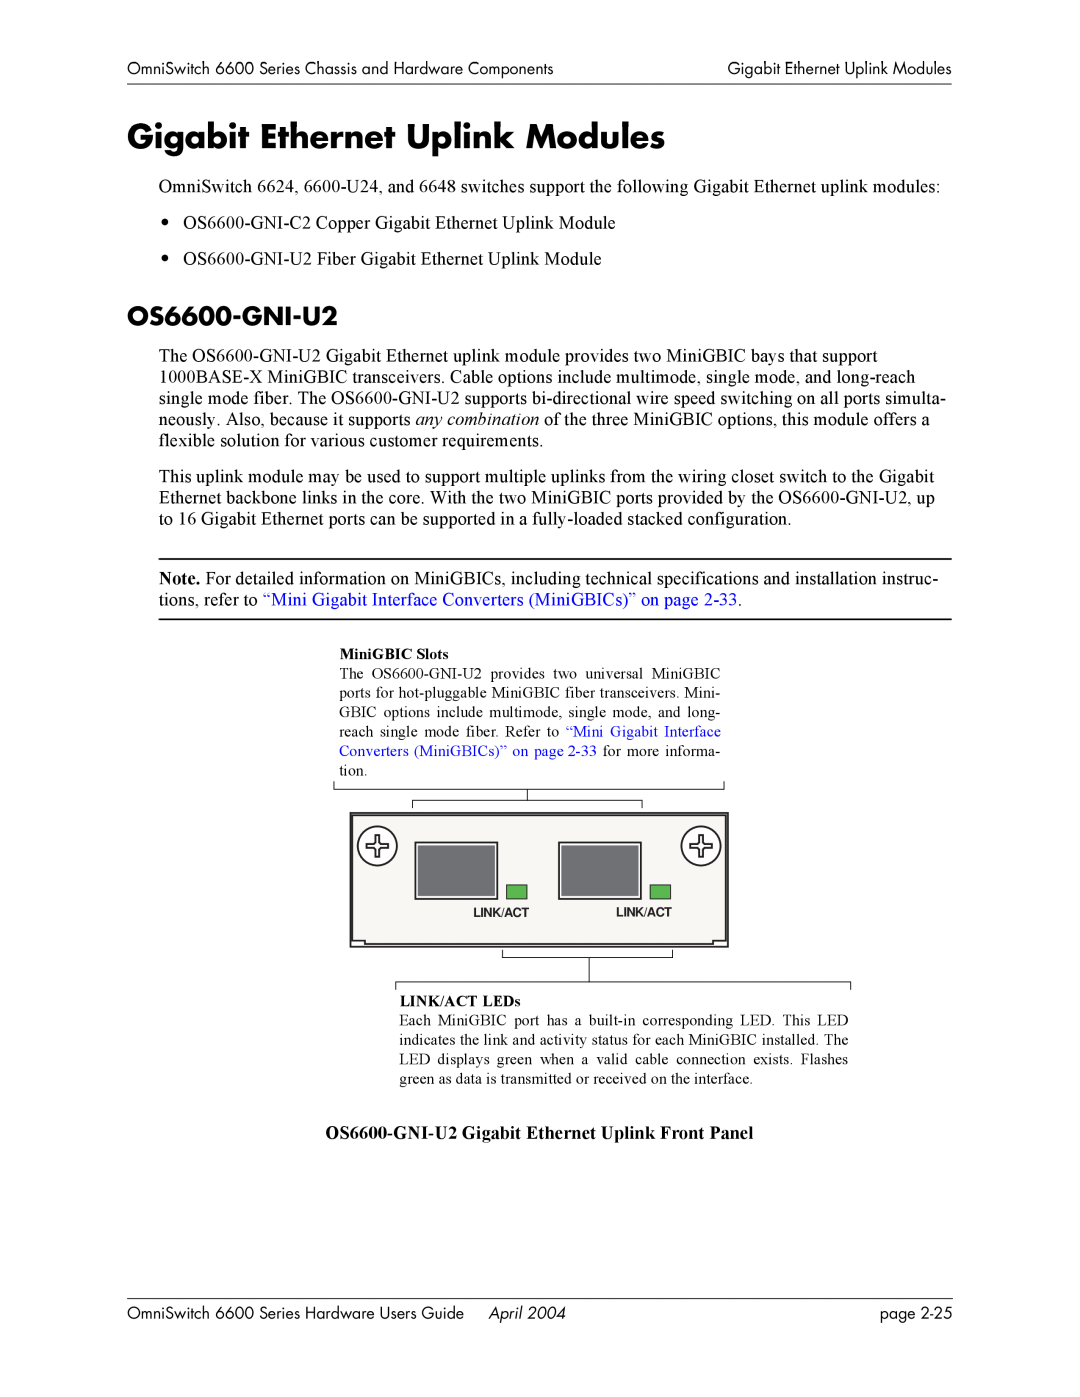 Alcatel-Lucent 6648, 6624 manual Gigabit Ethernet Uplink Modules, OS6600-GNI-U2 Gigabit Ethernet Uplink Front Panel 